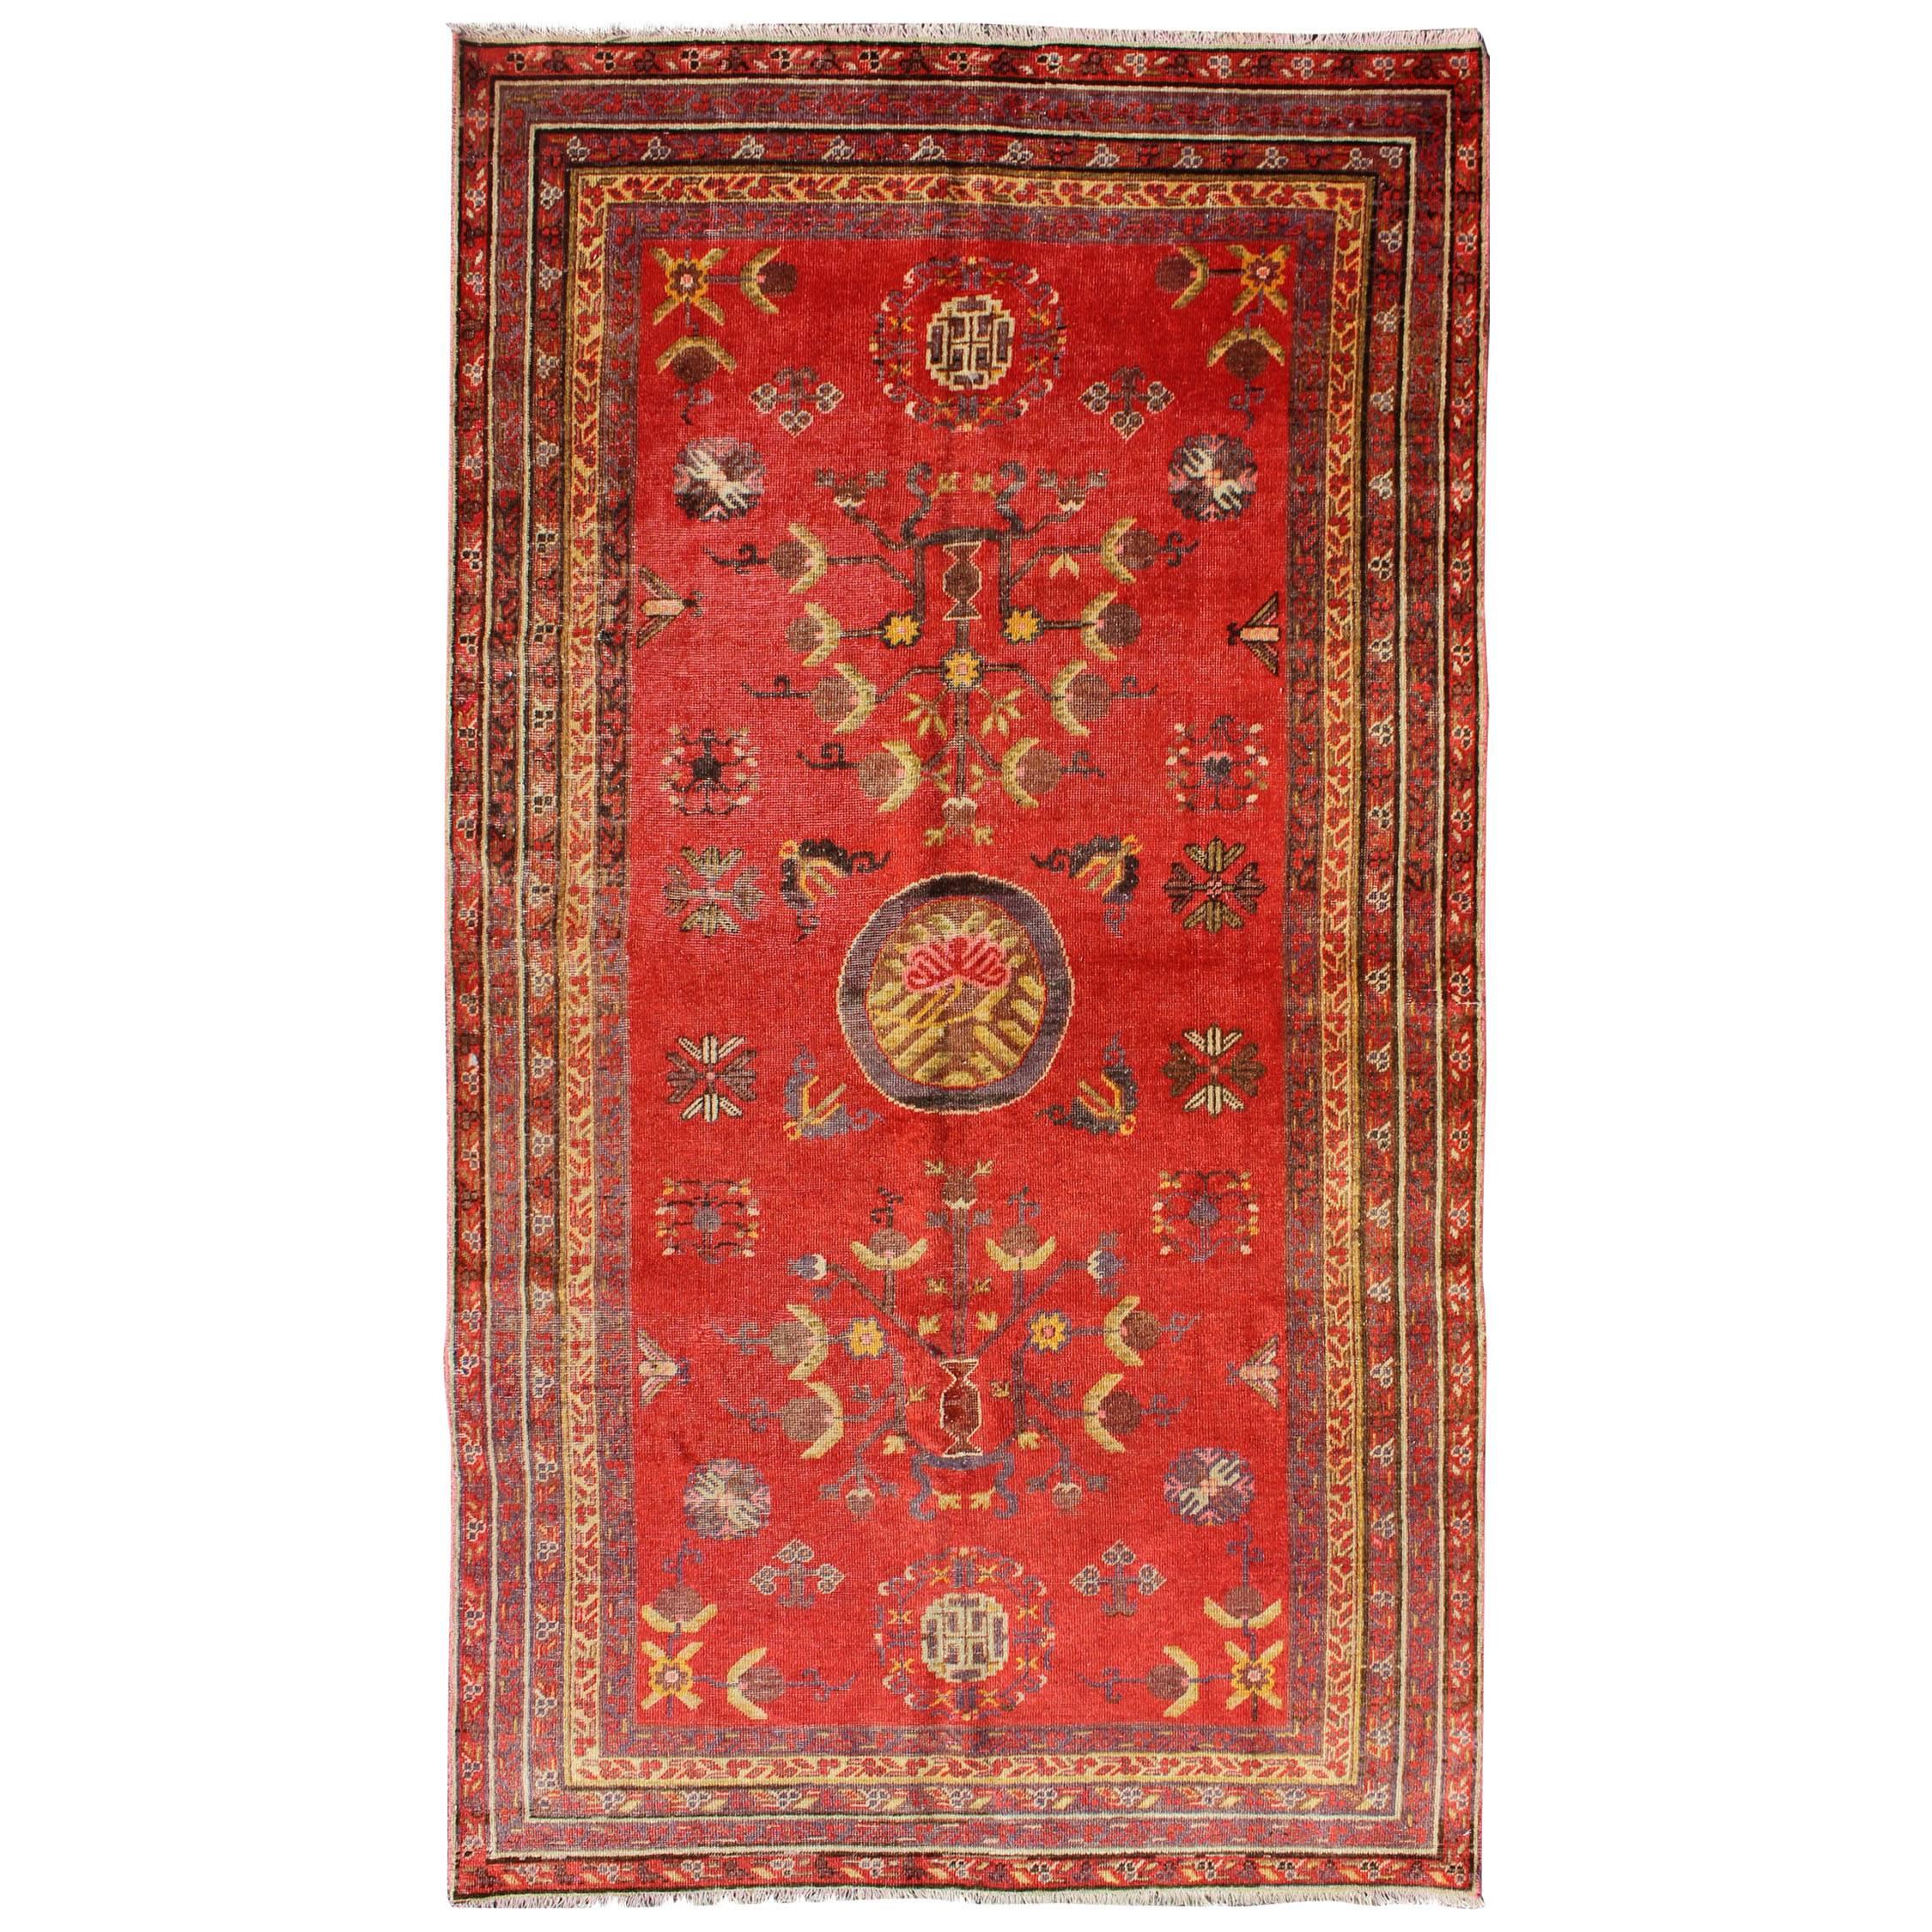 Tapis Khotan rouge vif avec motif floral sous-géométrique sur toute sa surface